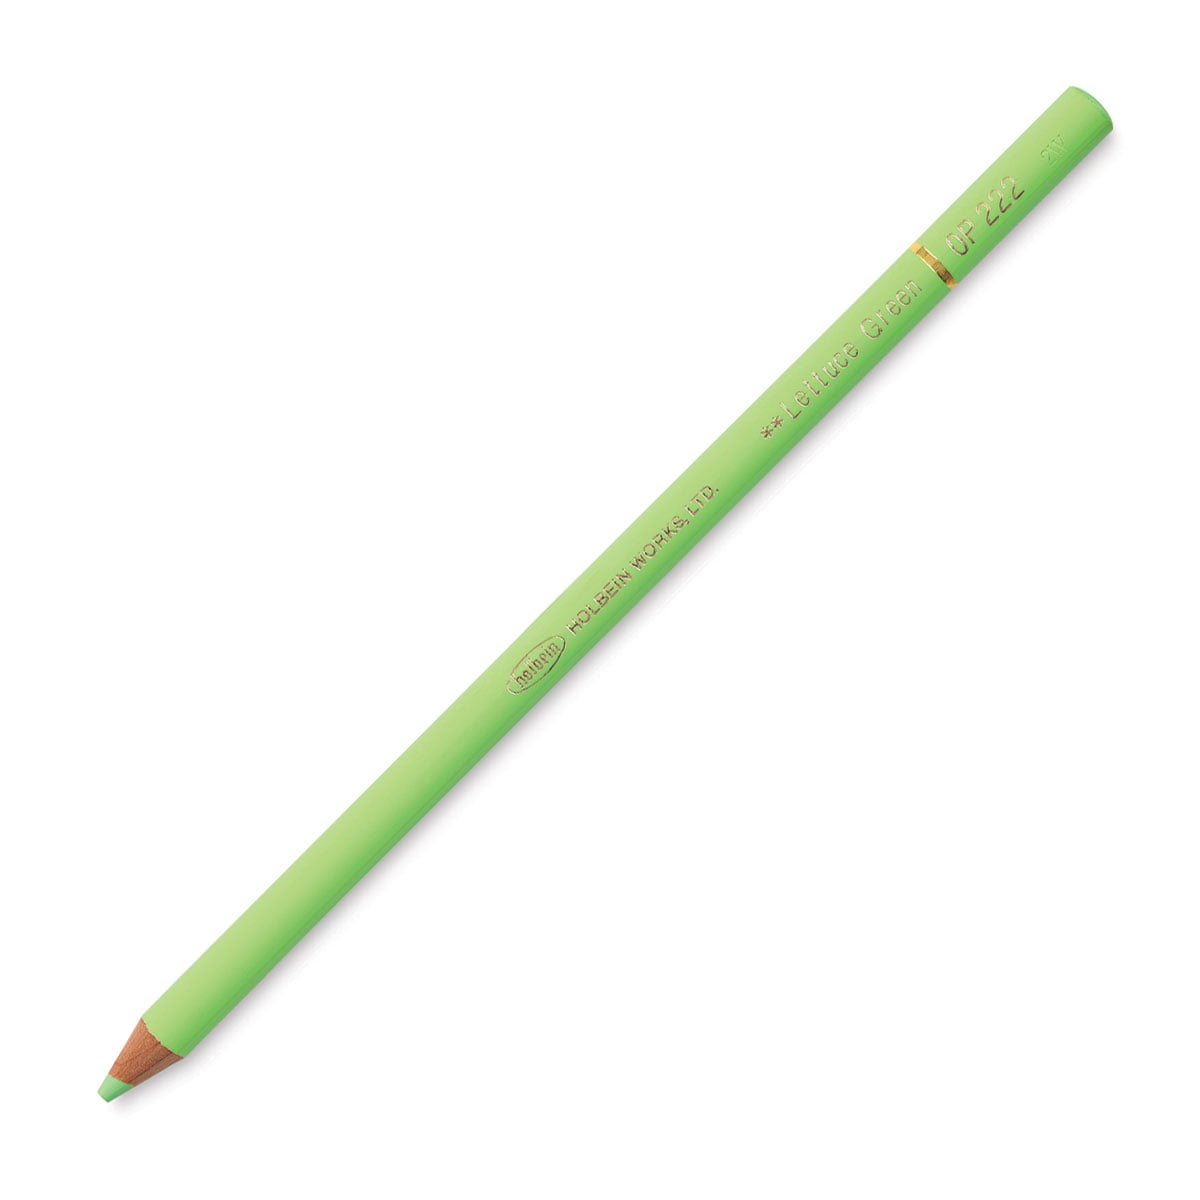 Crayola Colored Pencil Set, 36-Colors, School Supplies, Beginner